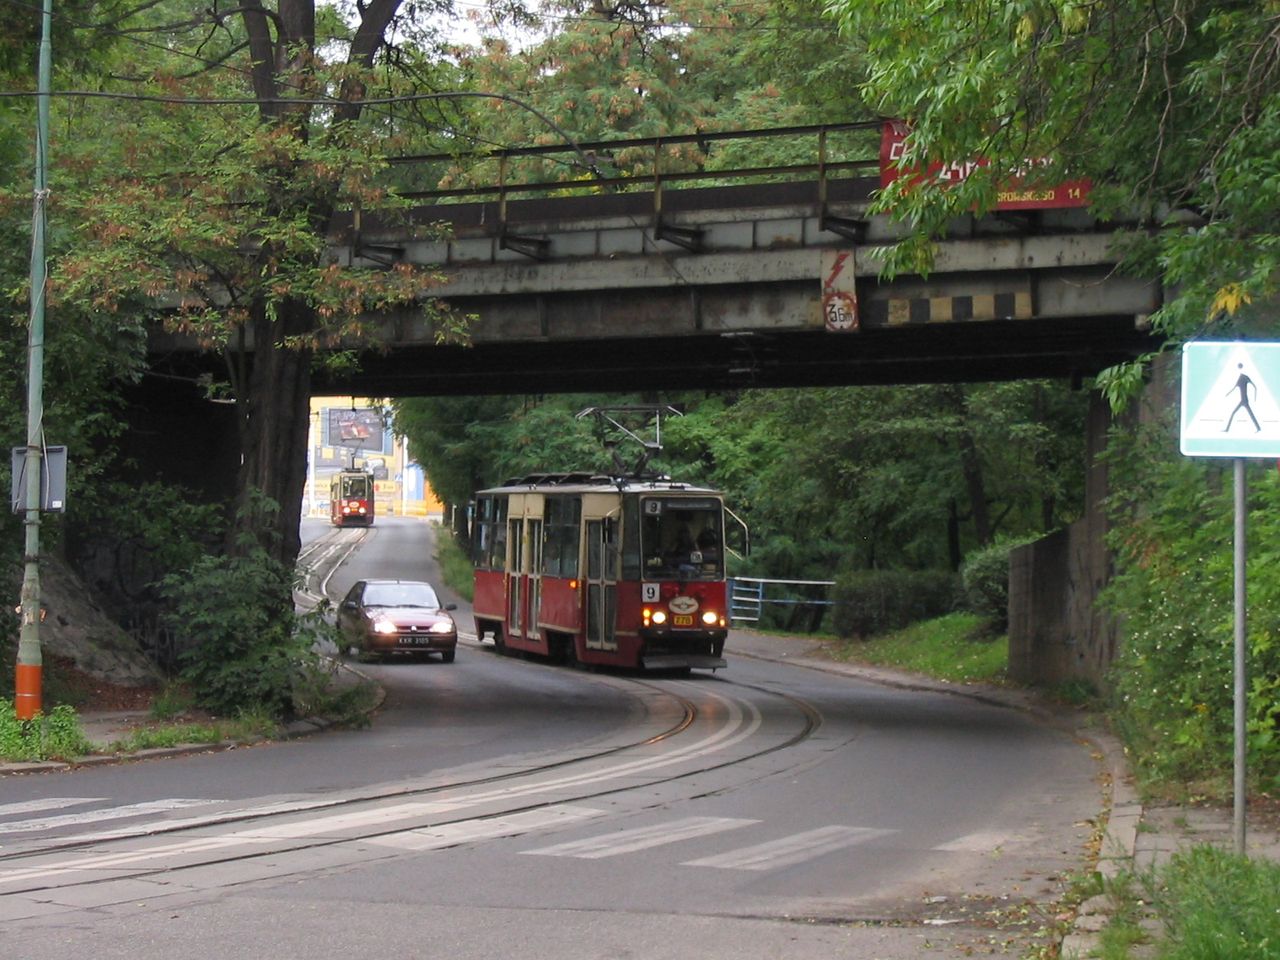 Tipikus sziléziai villamosvasúti hangulat. Swietochlowice és Chorzów között, egyvágányú pályán halad konvojban a 9-es és a 17-es villamos. A képre kattintva galéria nyílik (fotók: Indóház-archív | a szerző felvételei)